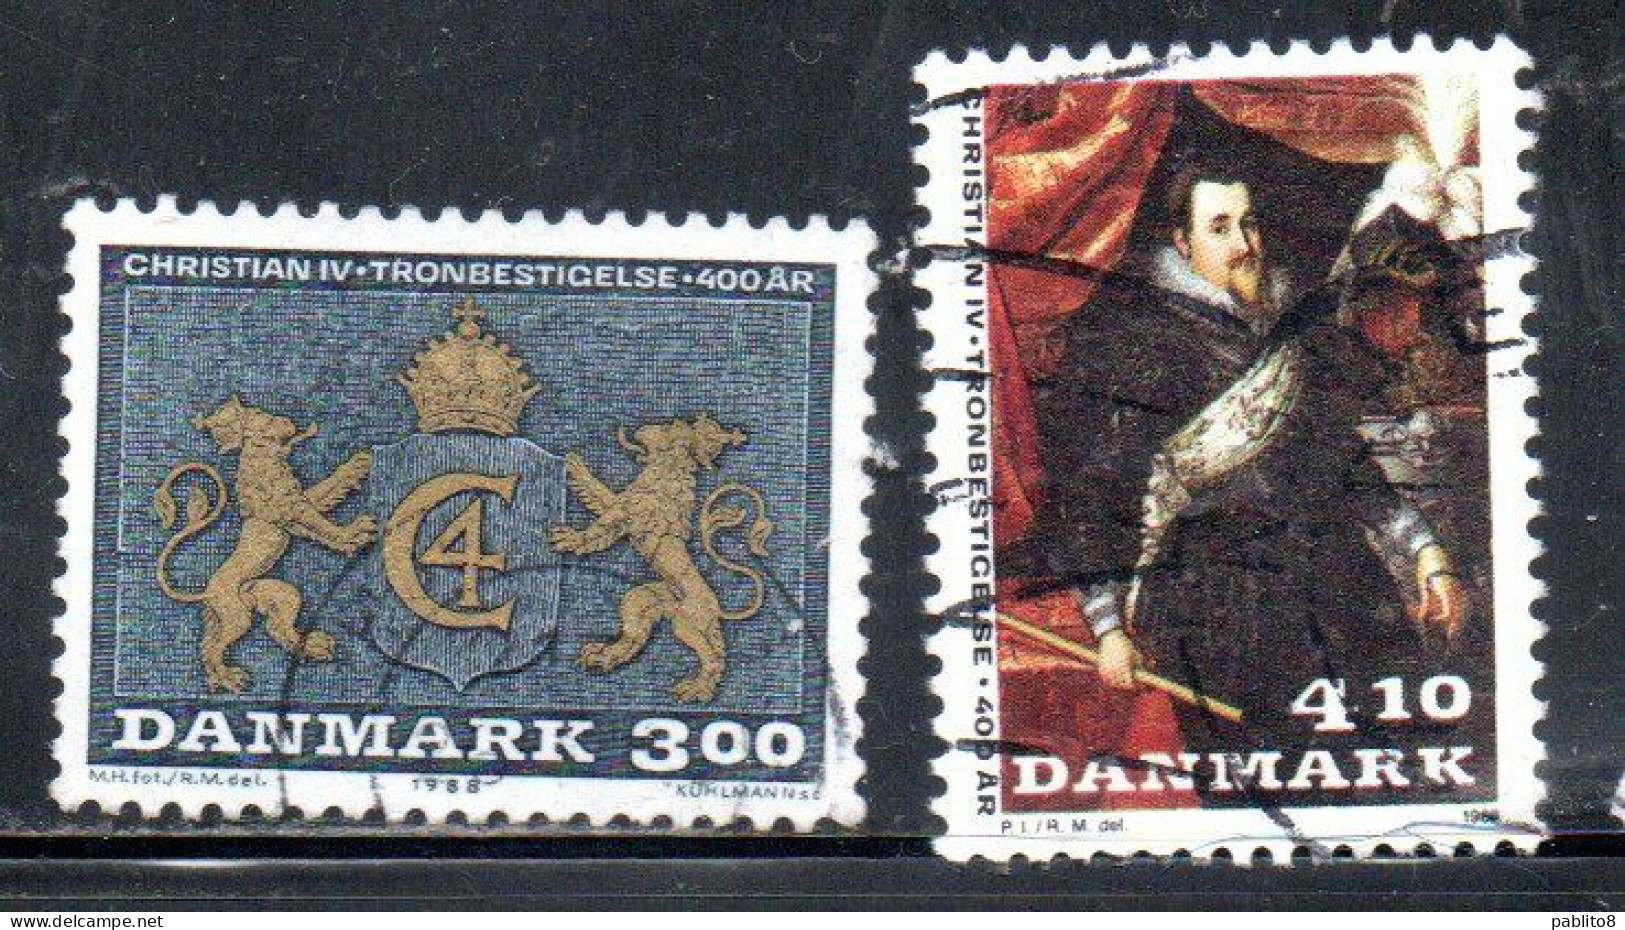 DANEMARK DANMARK DENMARK DANIMARCA 1988 ACCESSION OF CHRISTIAN IV KING OF DENMARK AND NORWAY SET USED USATO OBLITERE' - Oblitérés